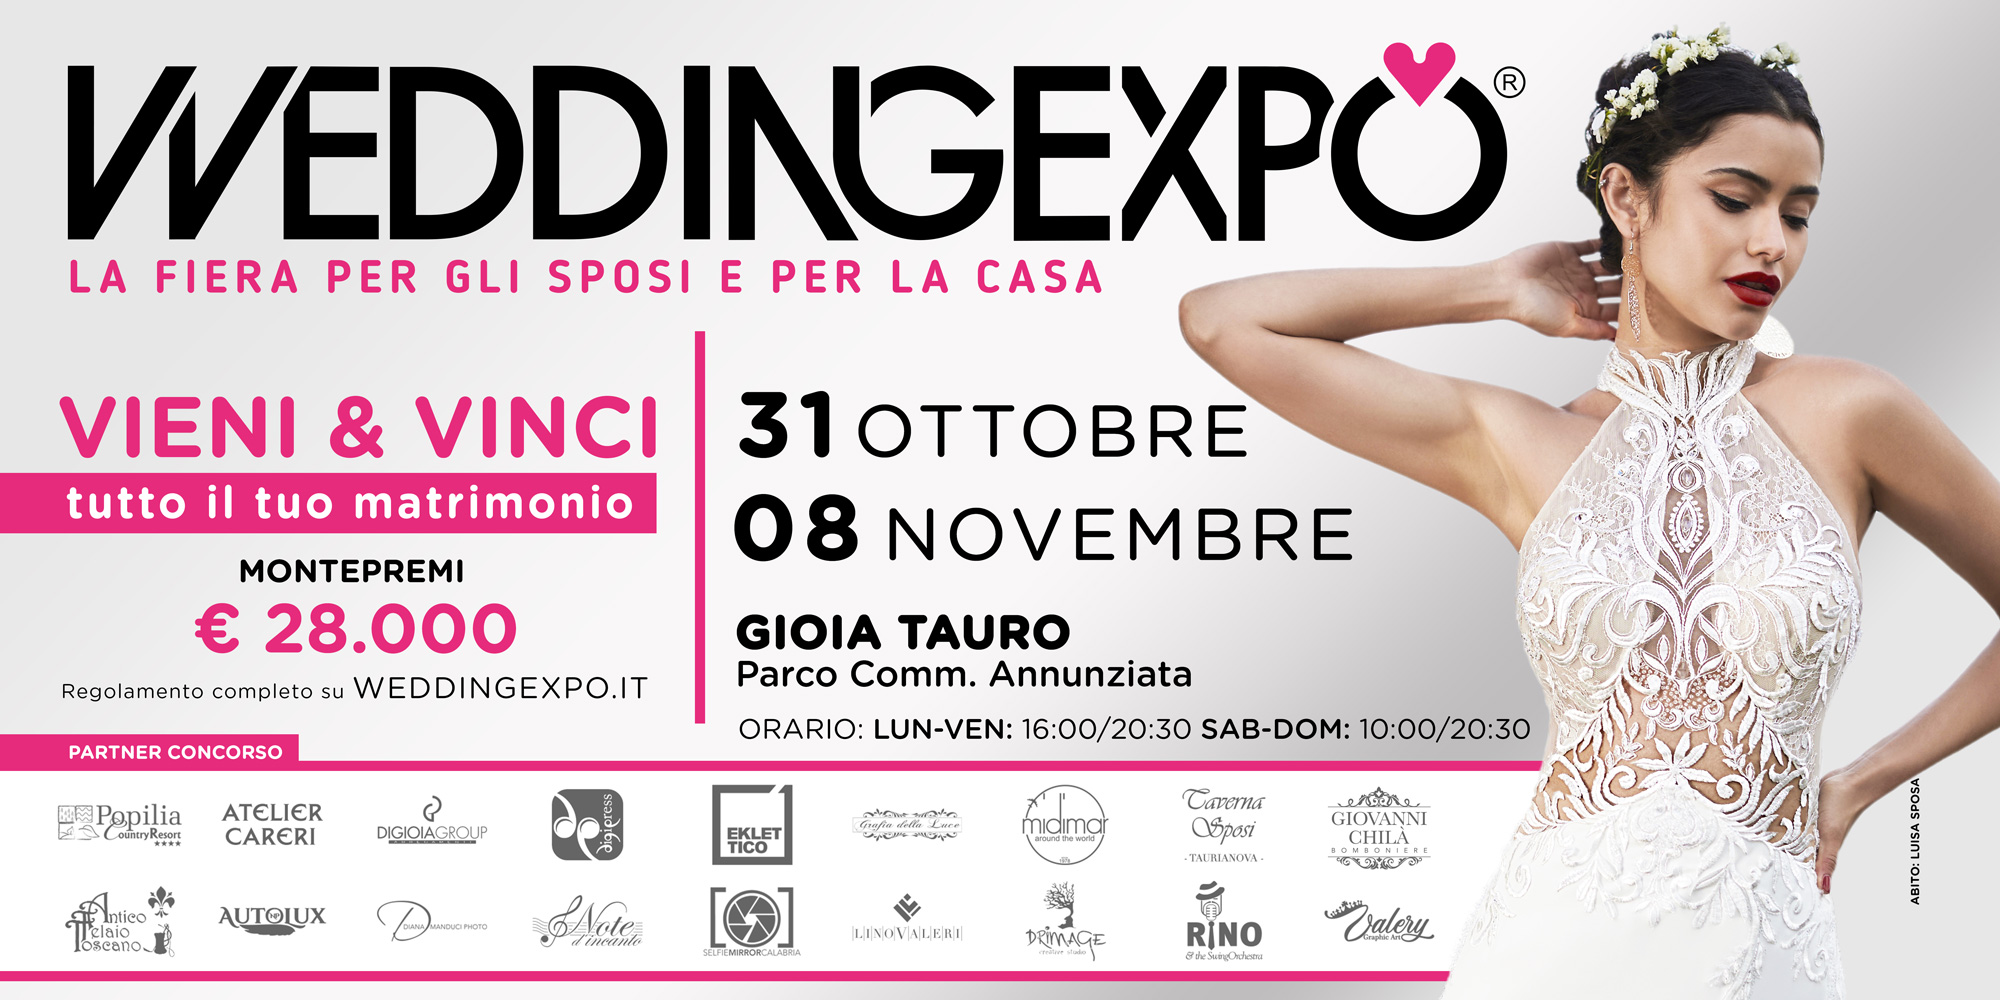 Wedding Expo 2020: Dal 31 Ottobre all’08 Novembre Parco Commerciale Annunziata